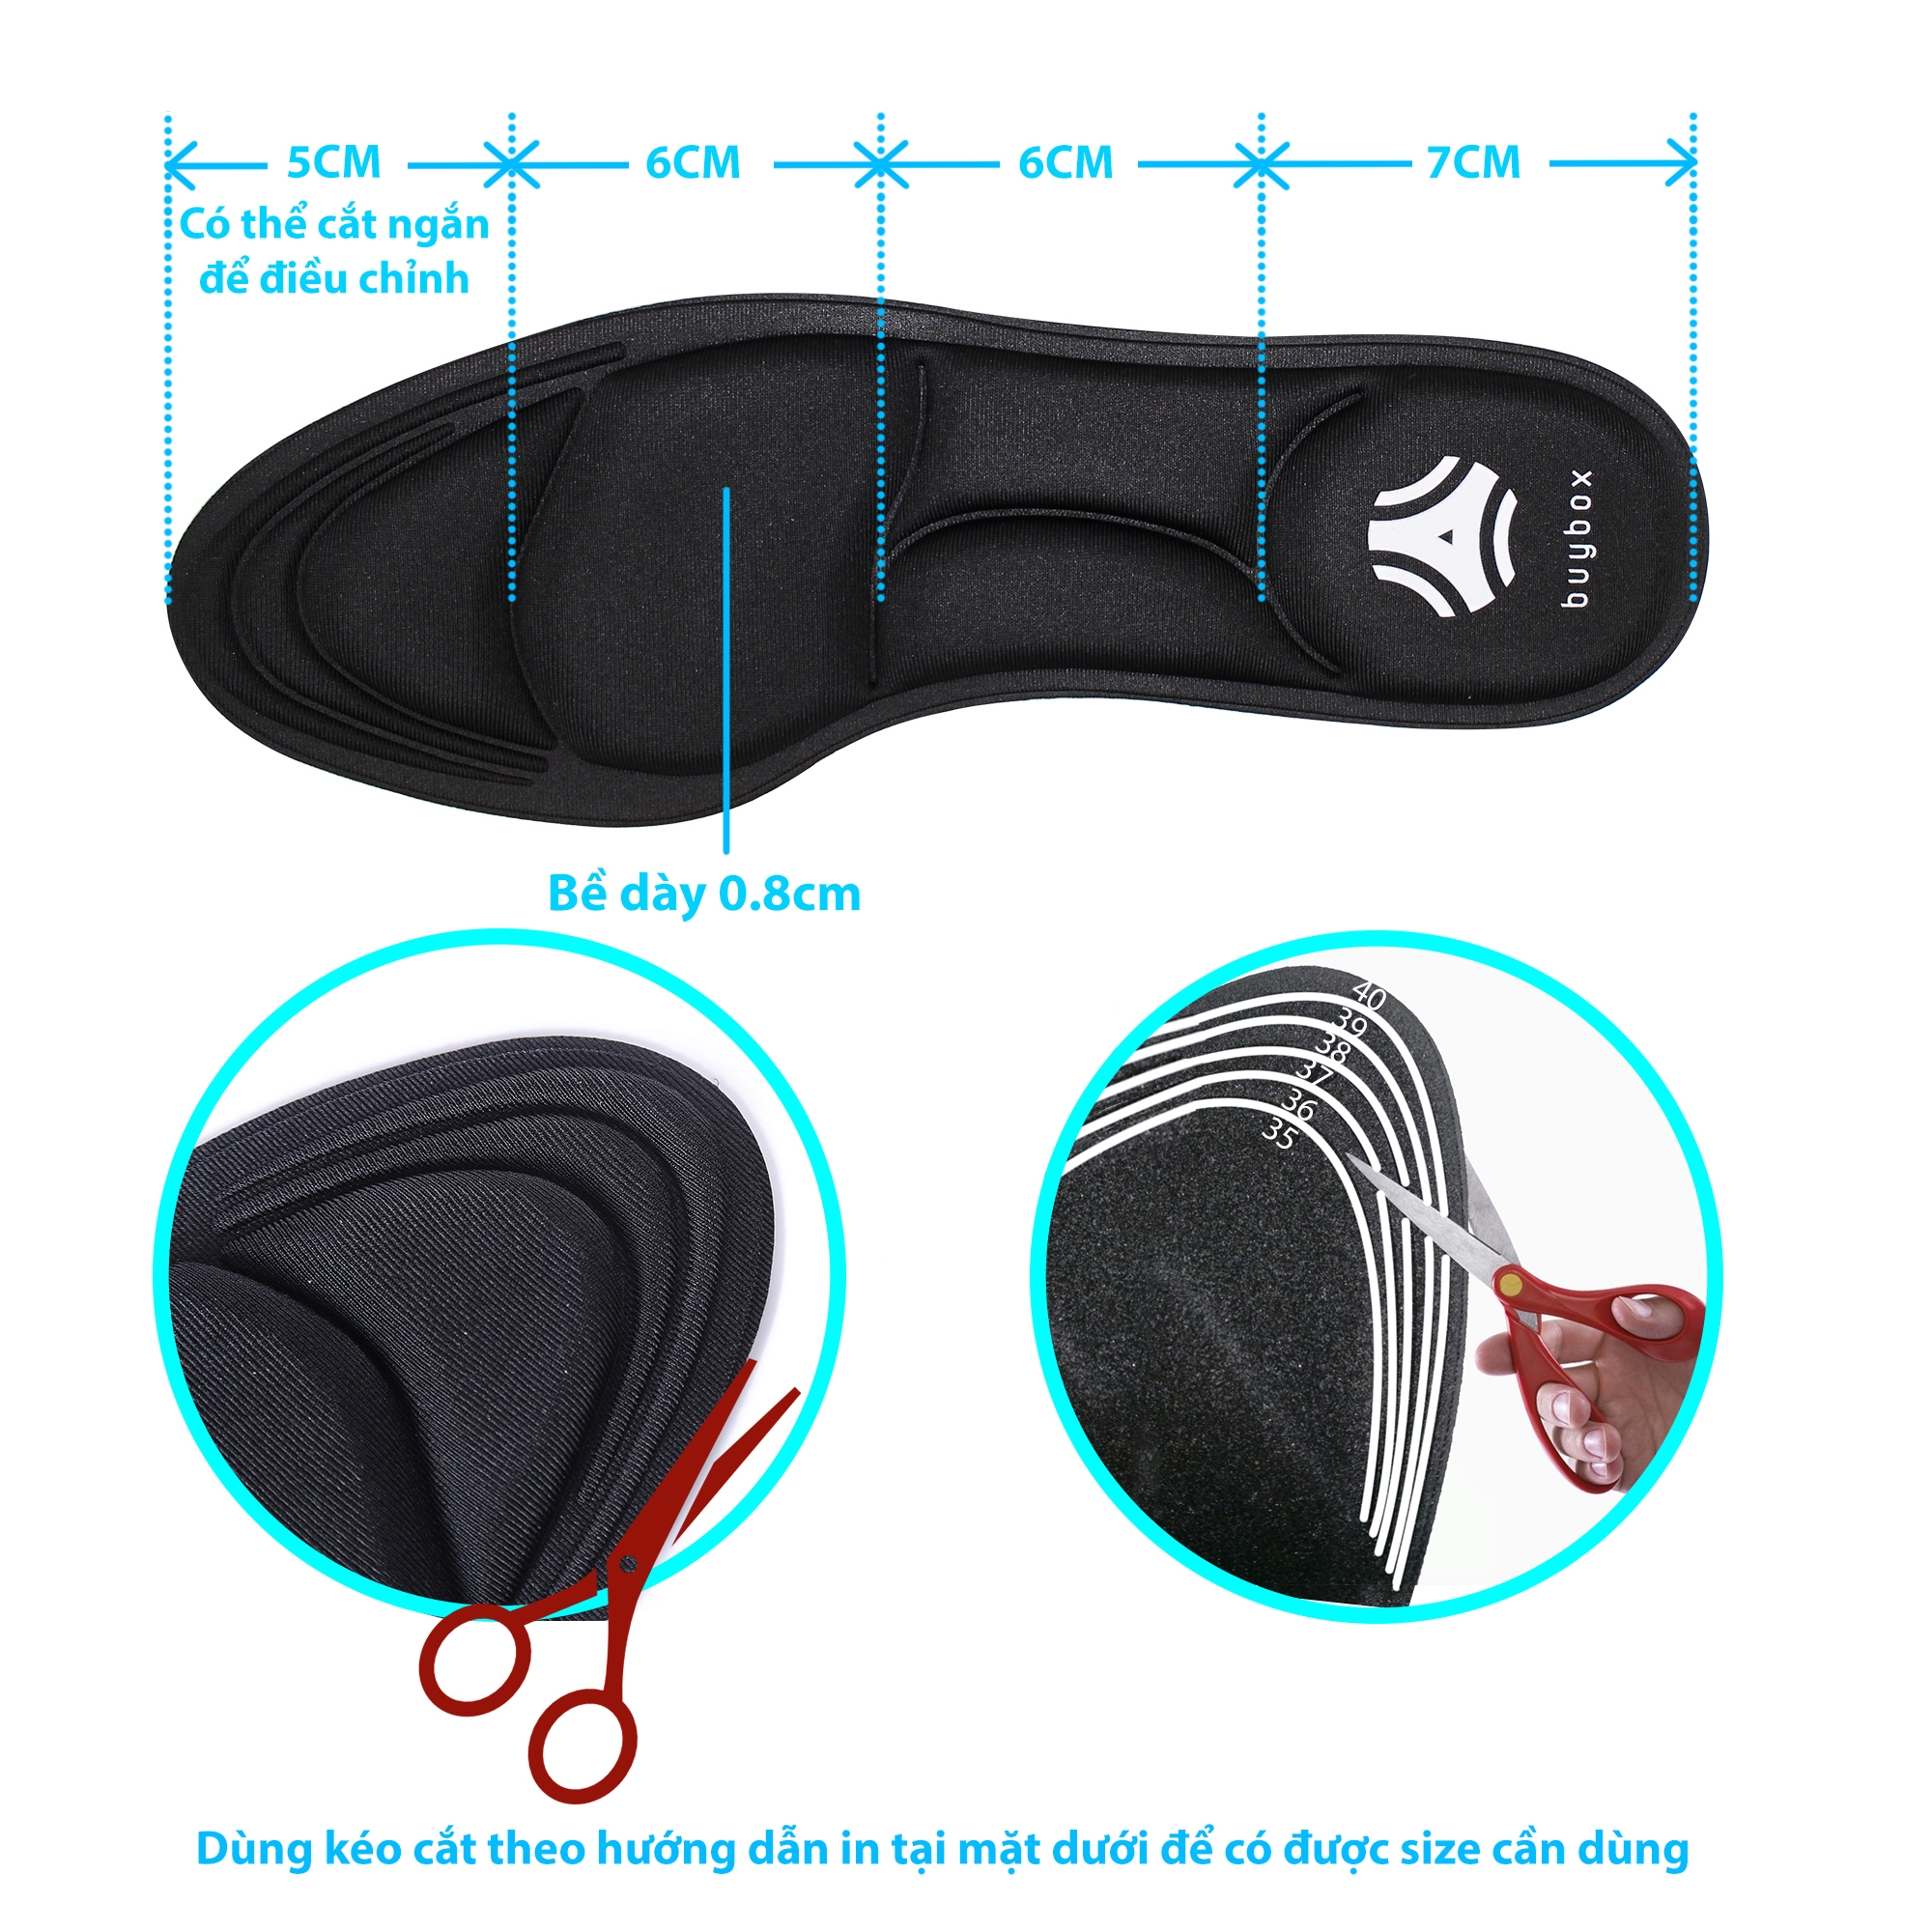 hướng dẫn dùng 2 cặp lót giày cao gót đa năng 4D cực êm chân, chống thốn gót chân và thấm hút mồ hô